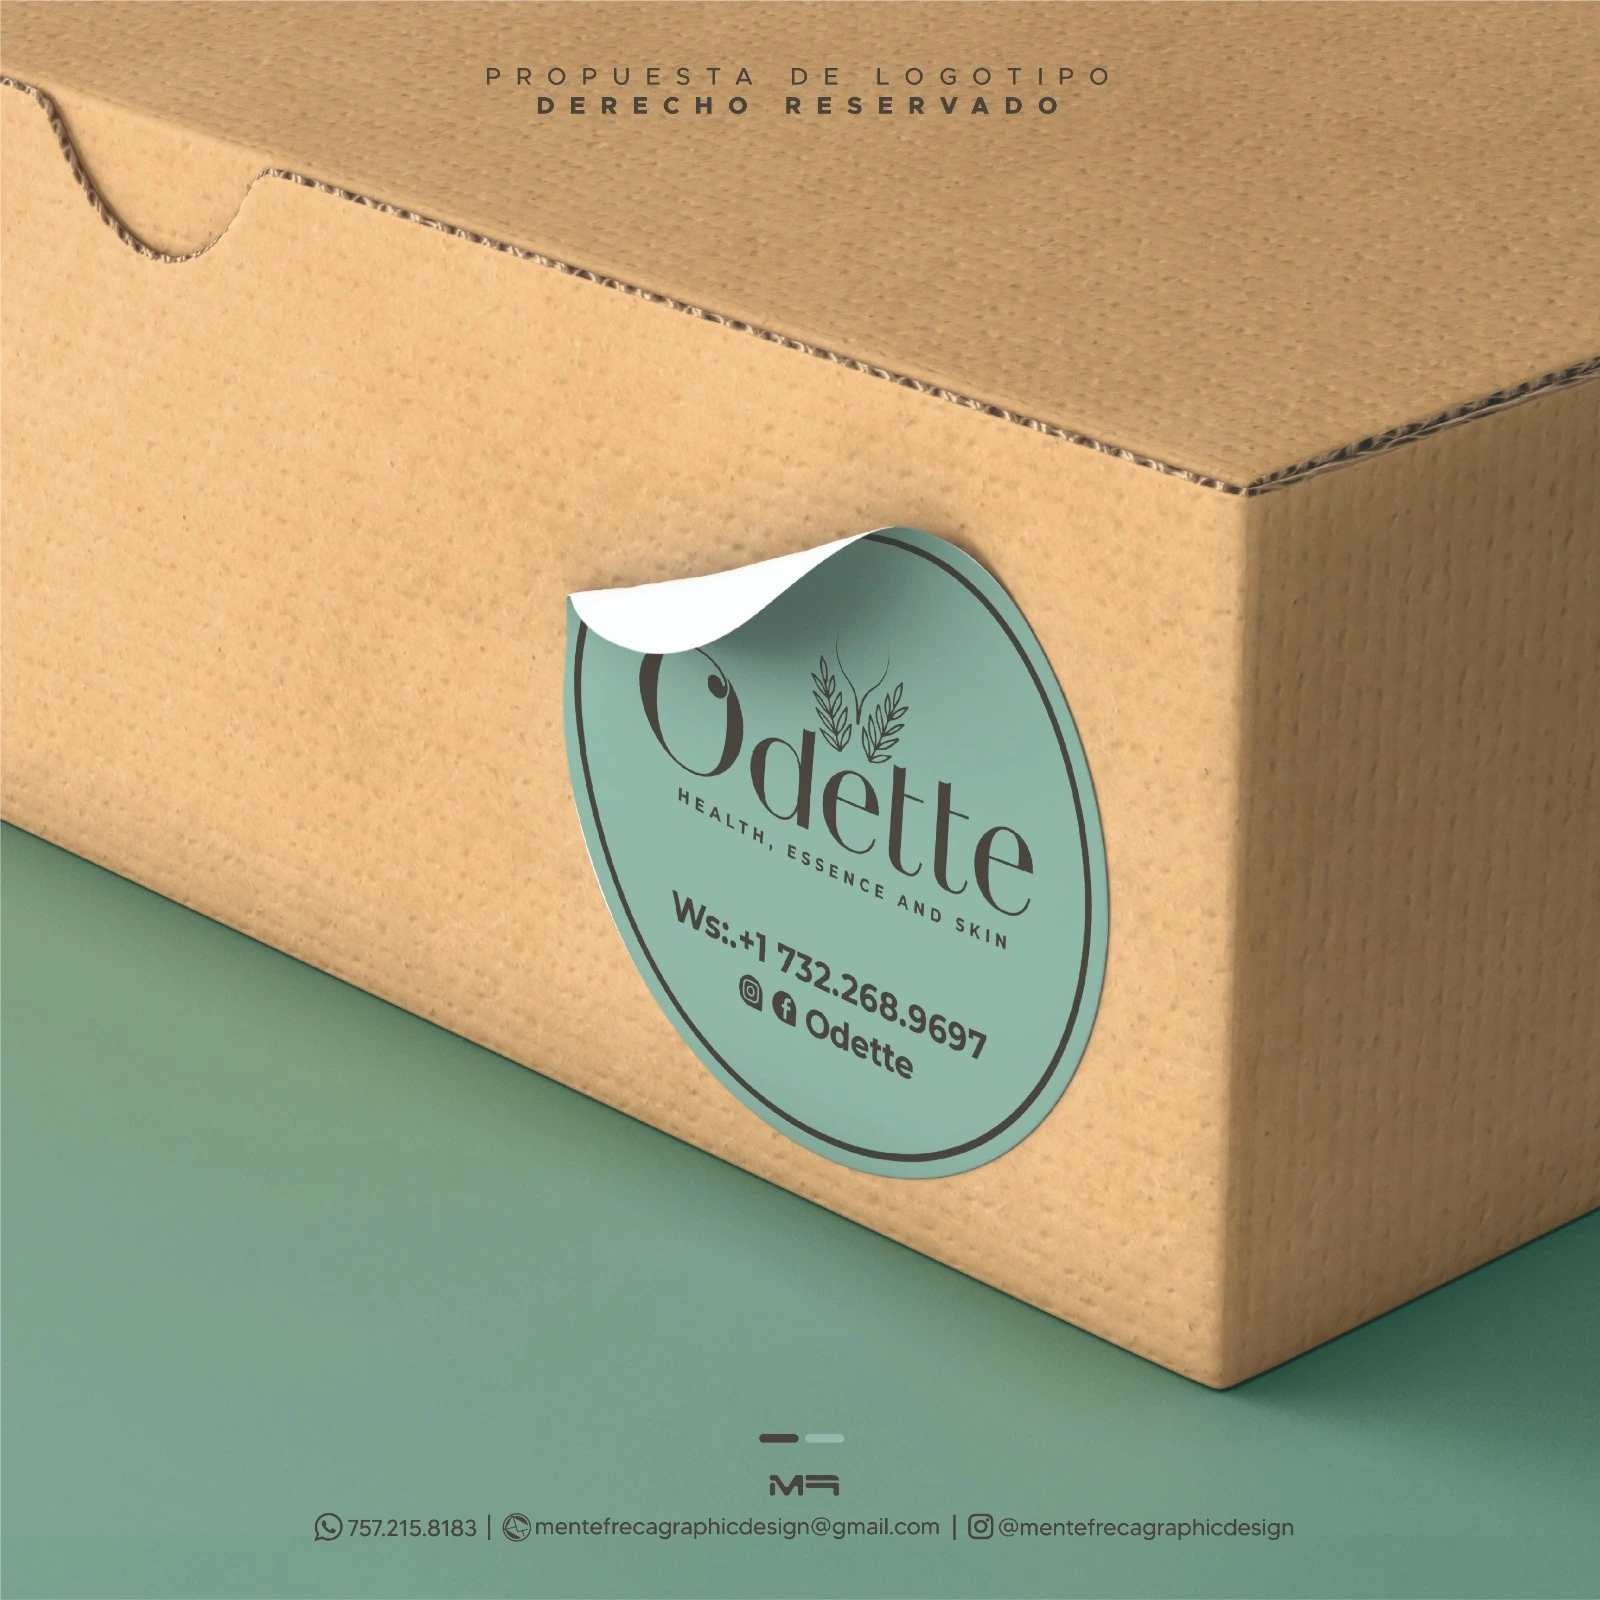 Odette Package Stamp